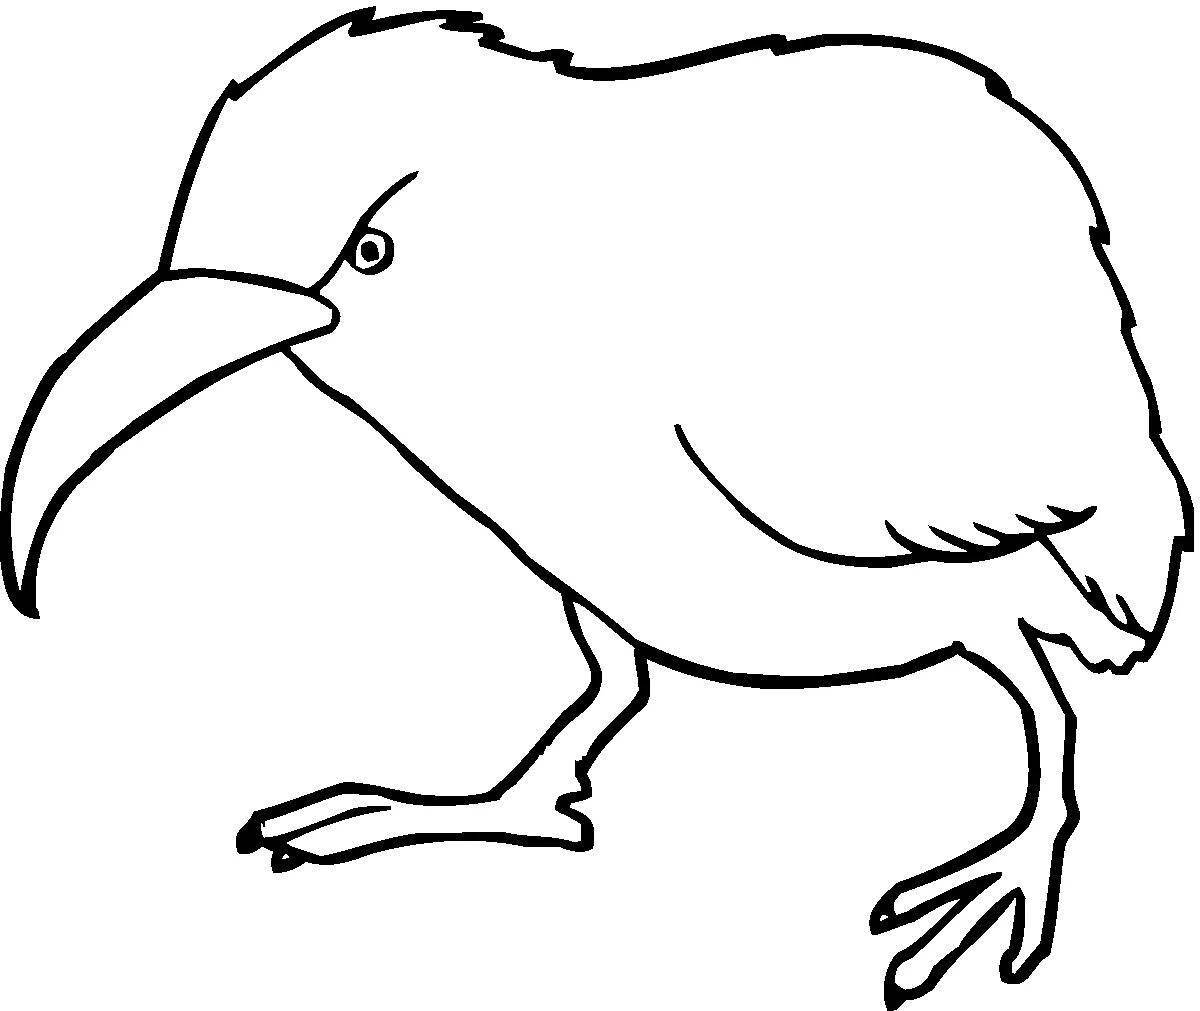 Анимированная страница раскраски птицы киви